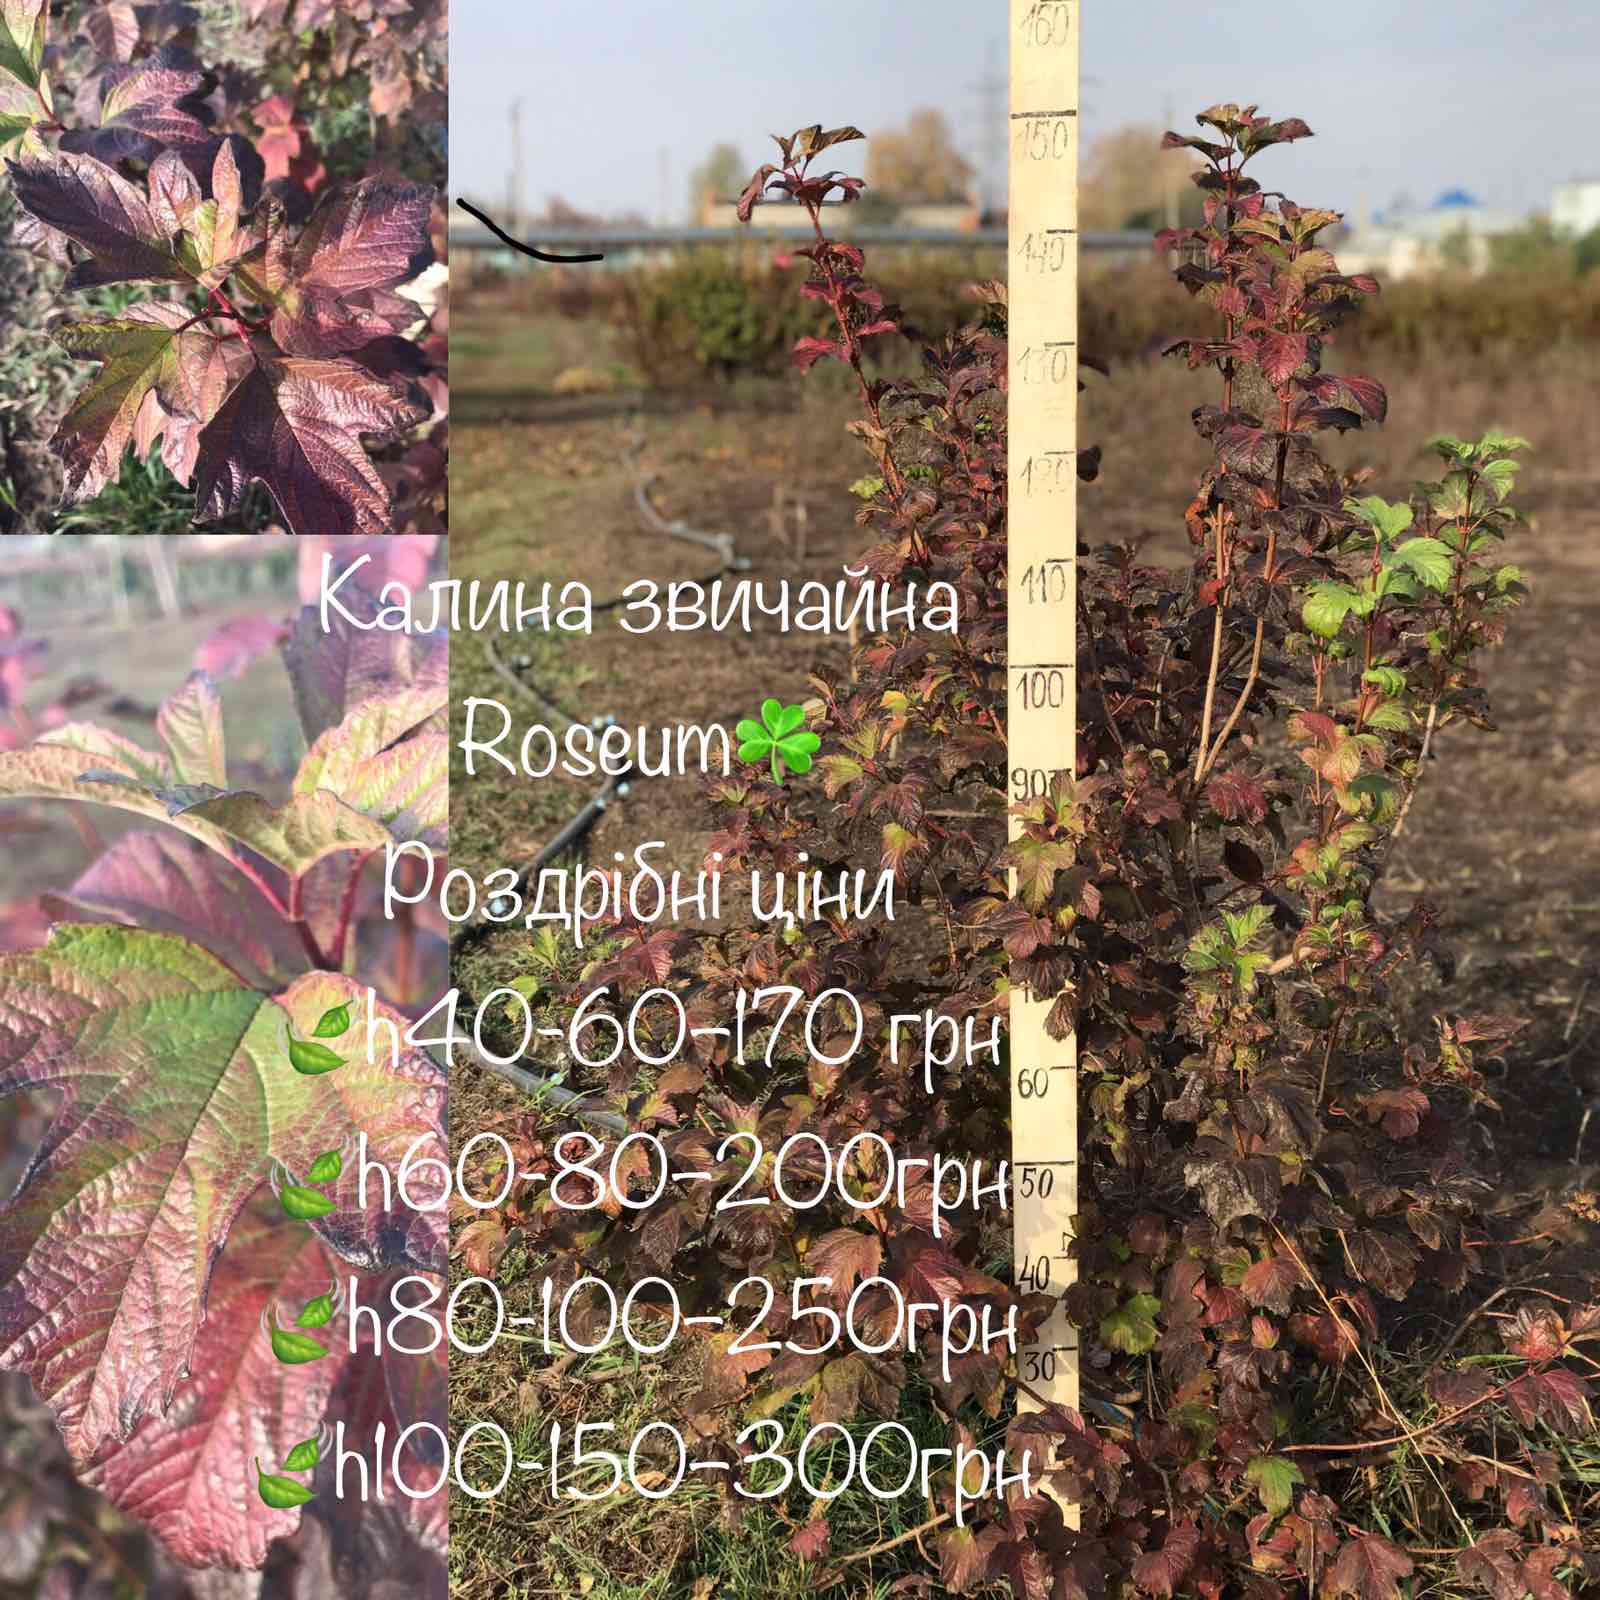 Купить многолетние цветы Киев